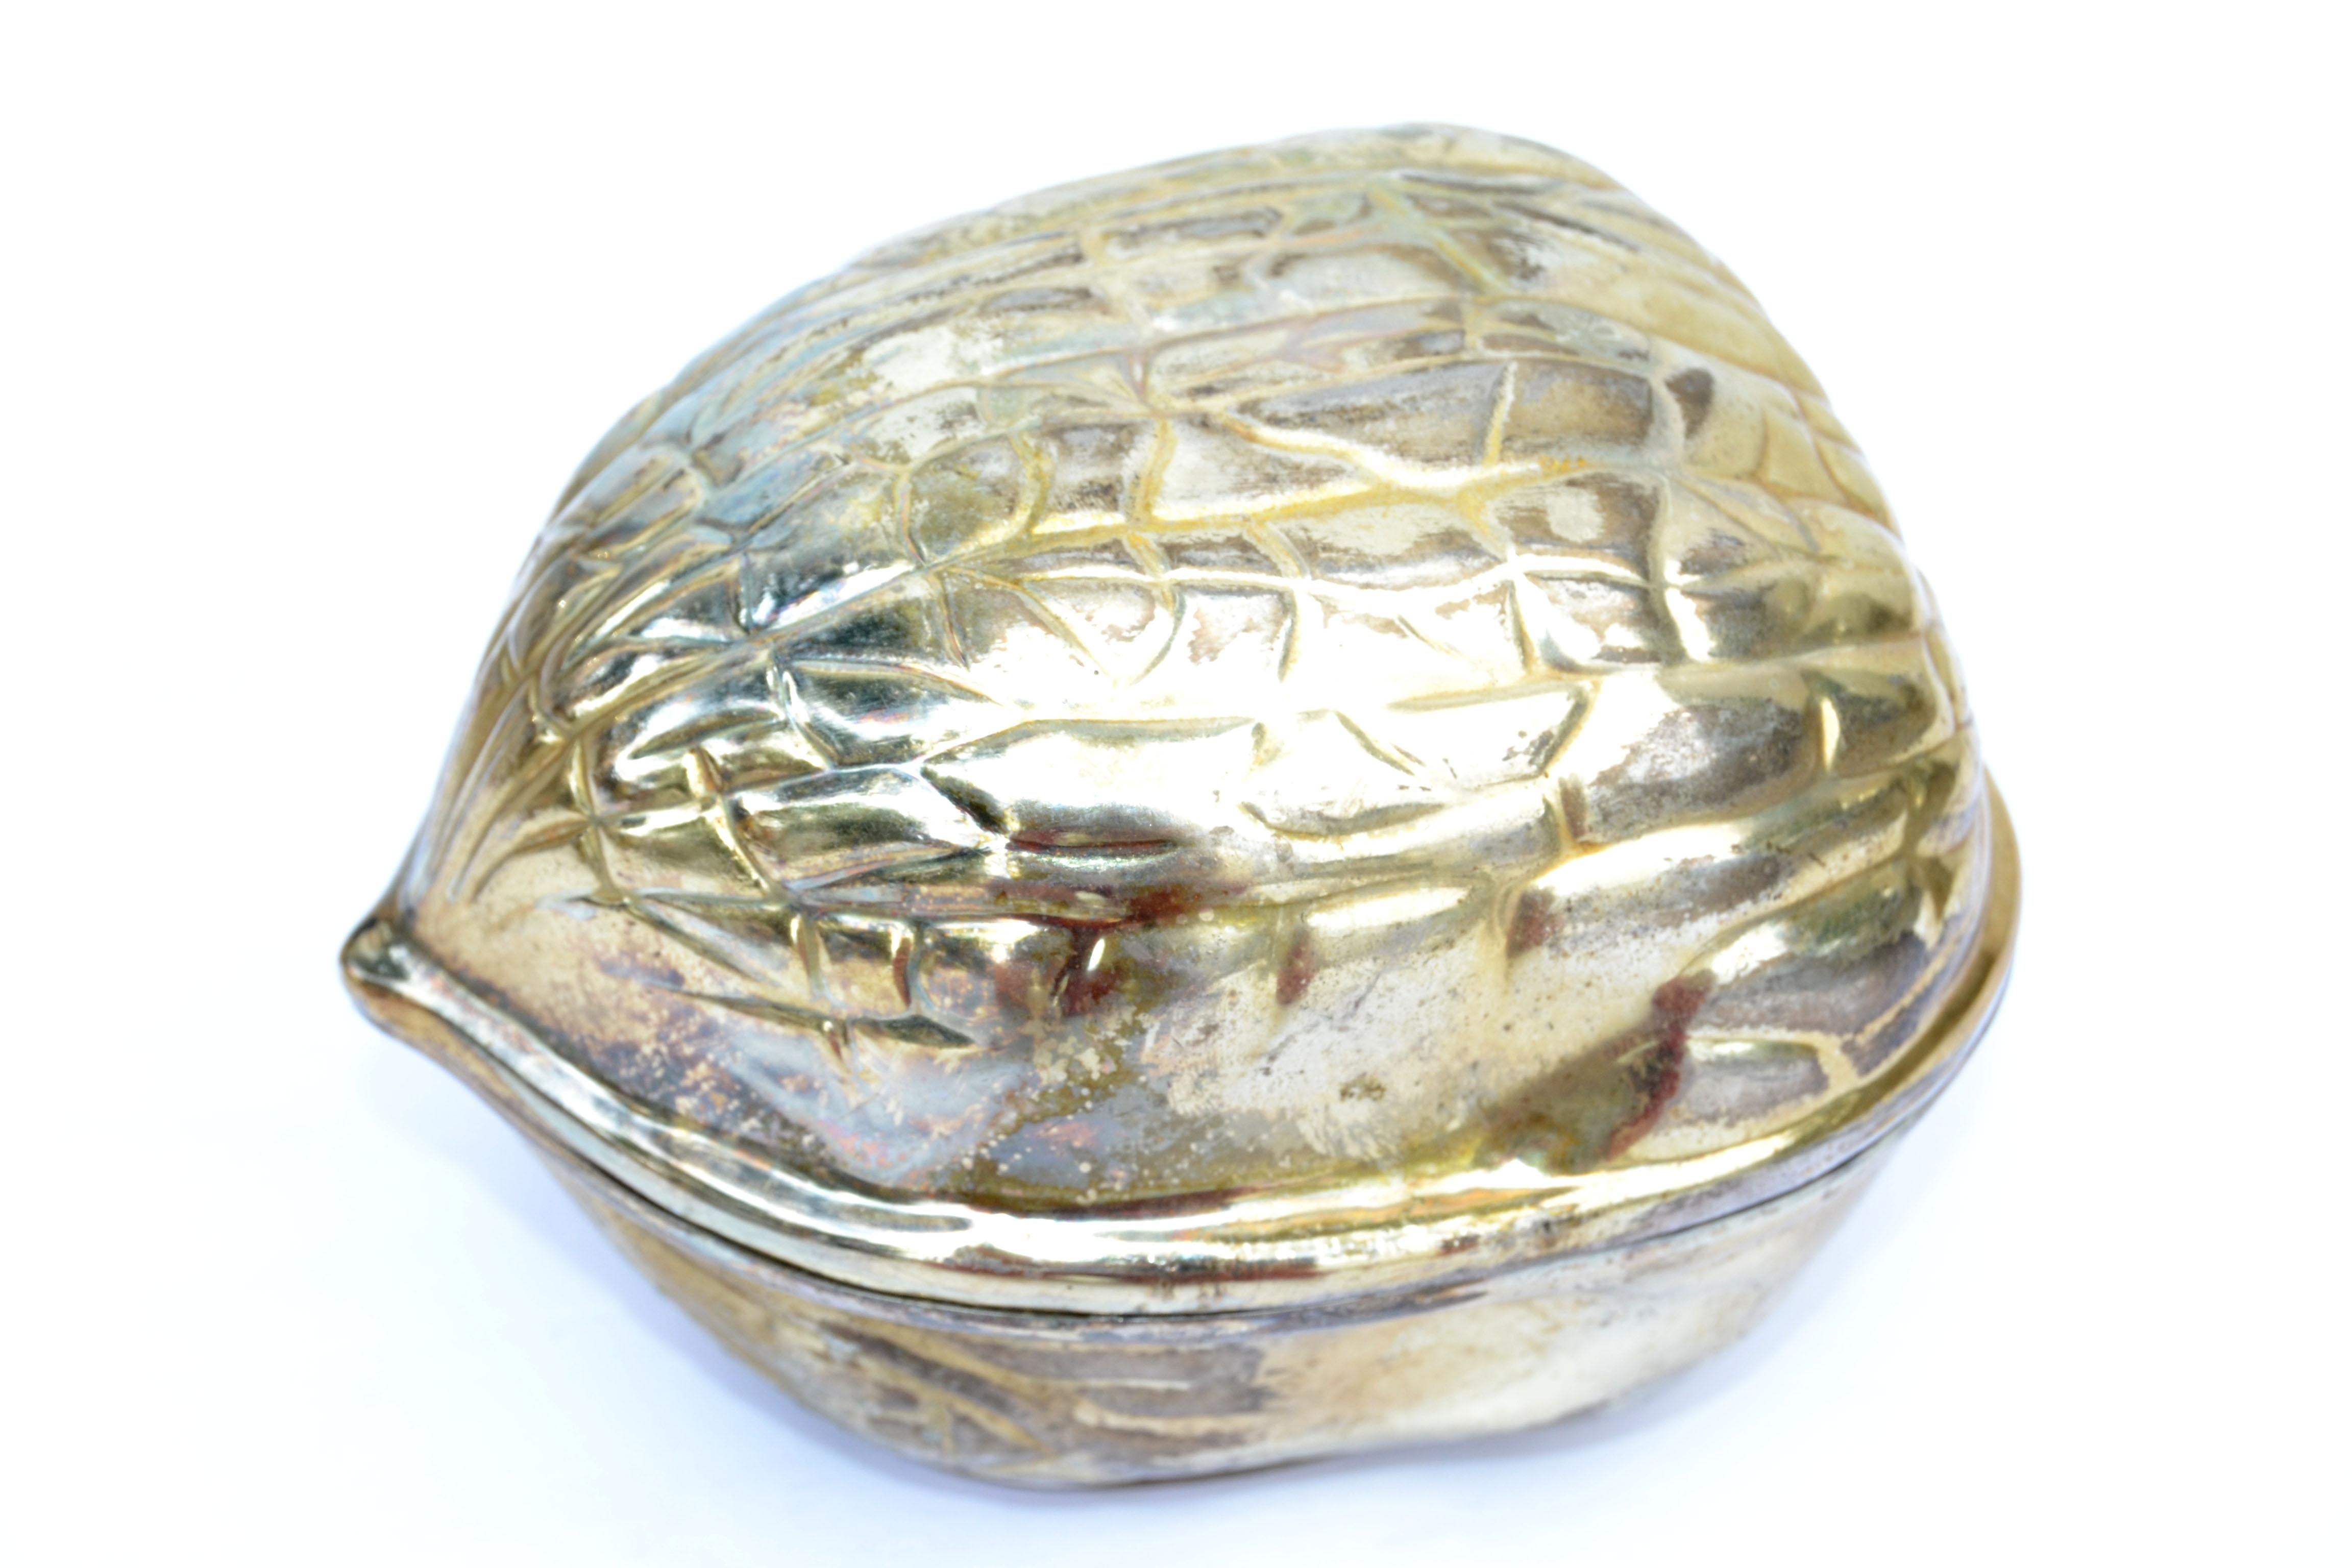 Vieille boîte en noyer, boîte à bibelots, souvenir fabriqué aux USA par F.B. Rogers Silver Company, vers 1970.
Réalisé en métal doré et laissé intentionnellement dans la patine vieillie.

